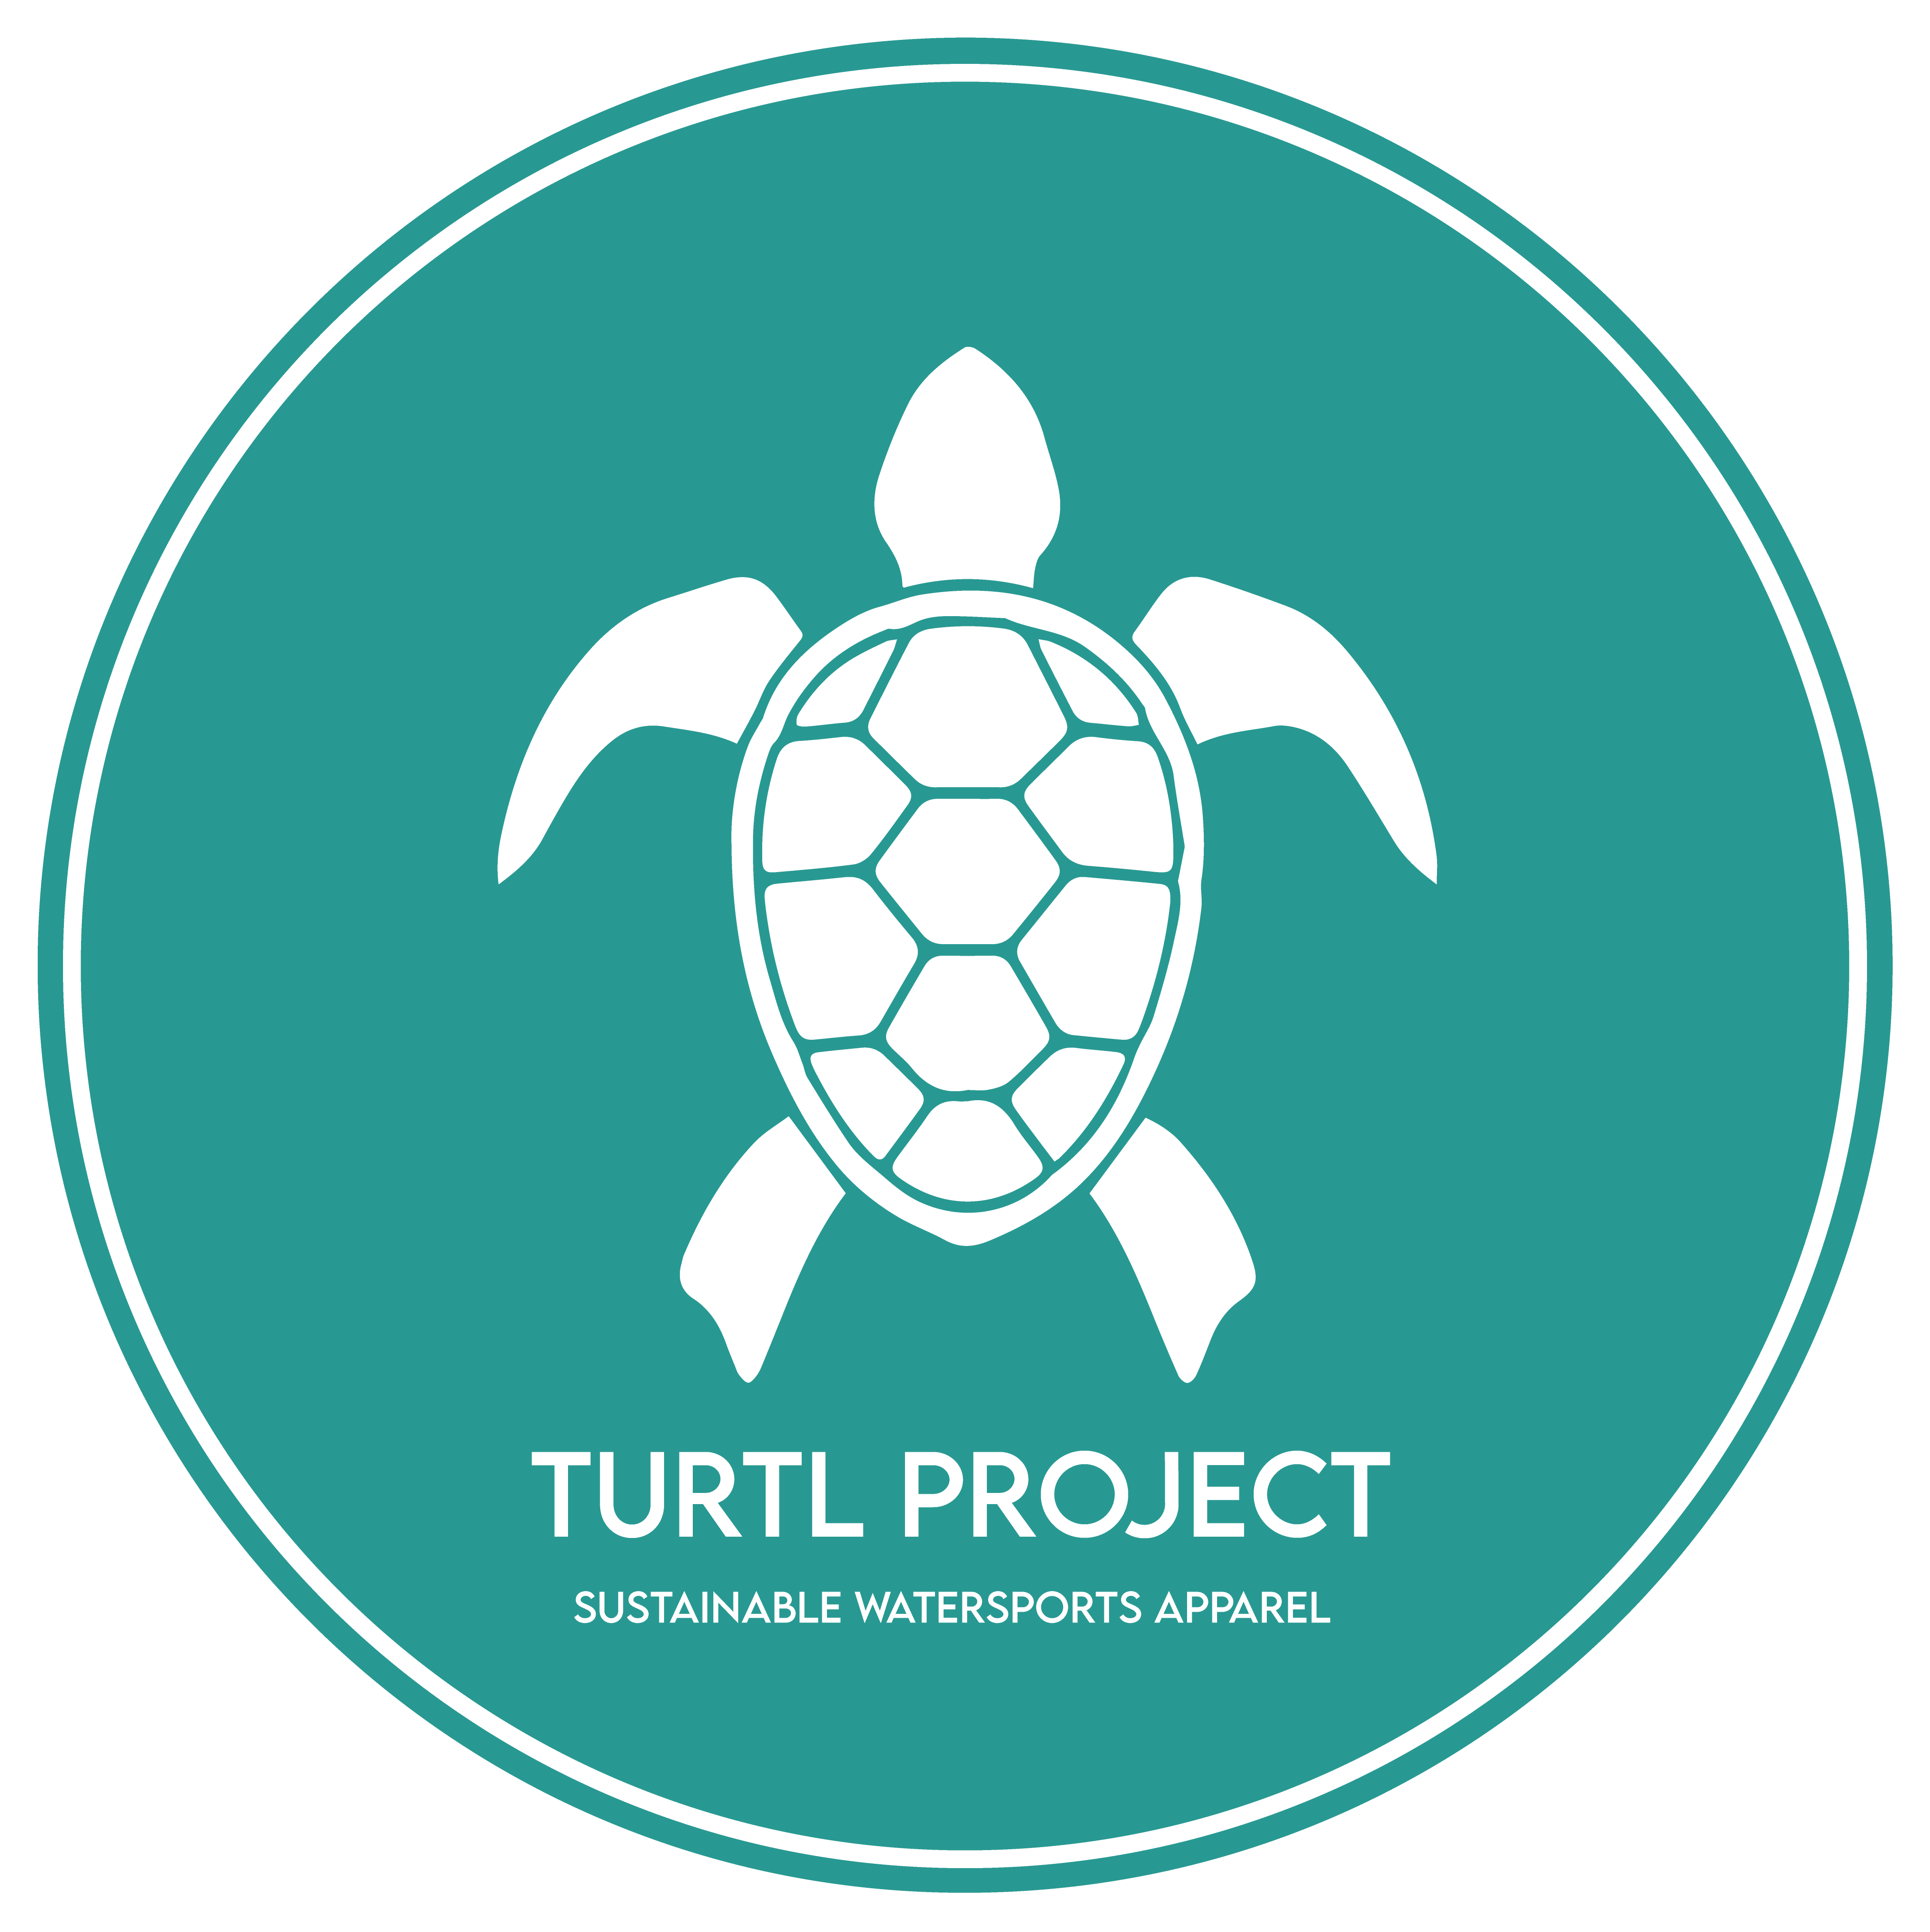 Turtl Project